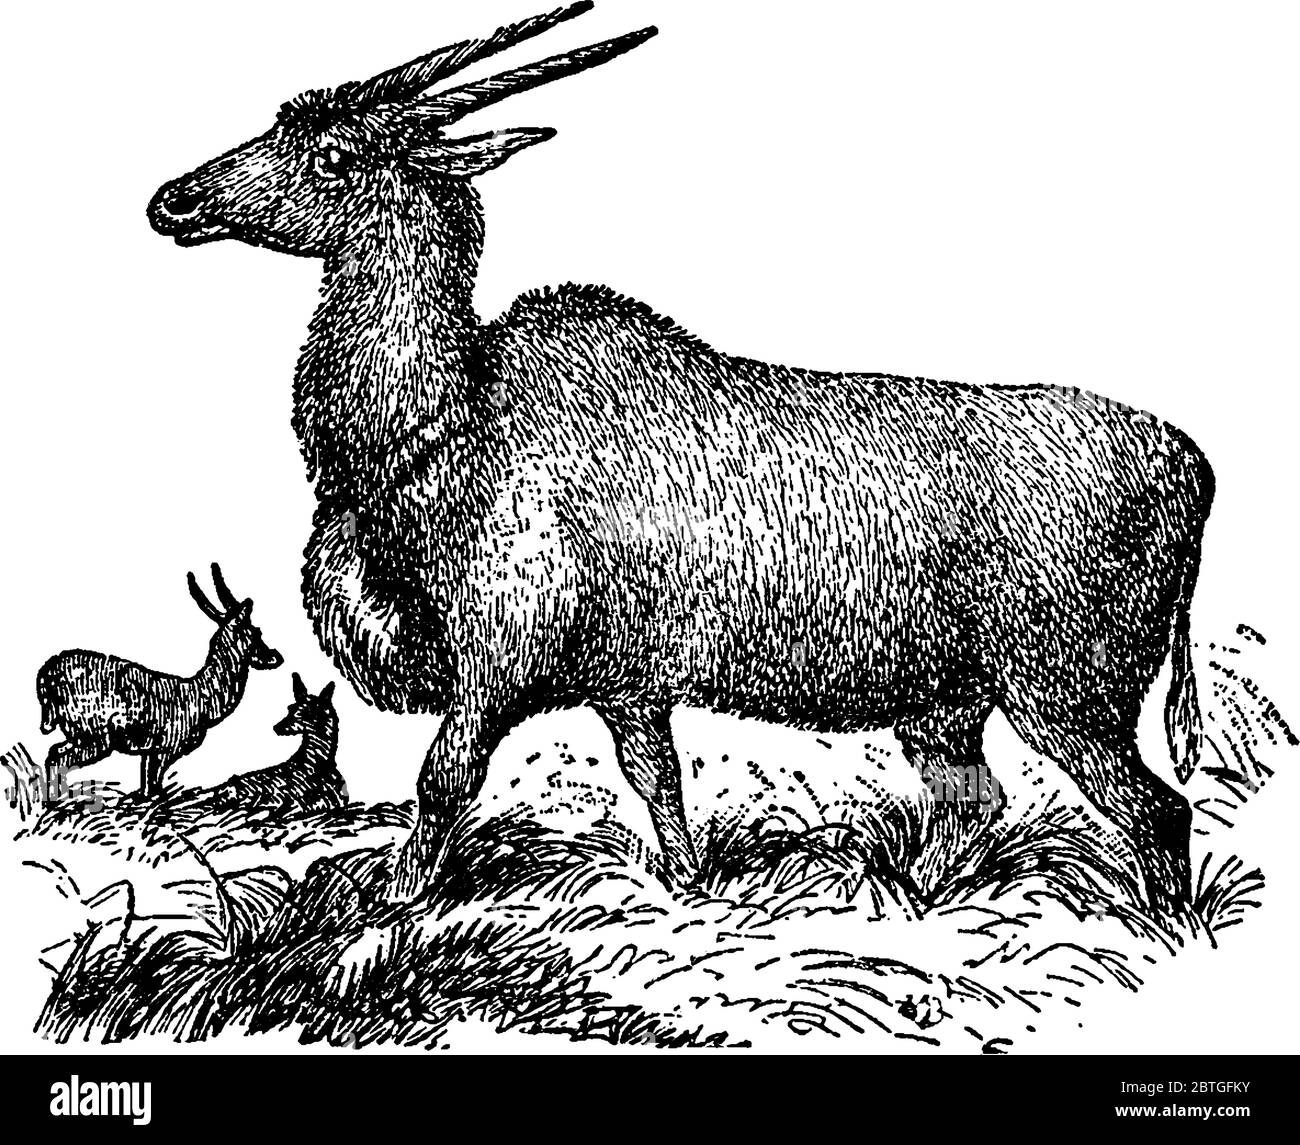 Zeigt drei Elands, zwischen den Gräsern. Eland ist eine Savanne und Ebene Antilope in Ost-und Südafrika gefunden, Vintage-Linie Zeichnung oder Gravur Stock Vektor